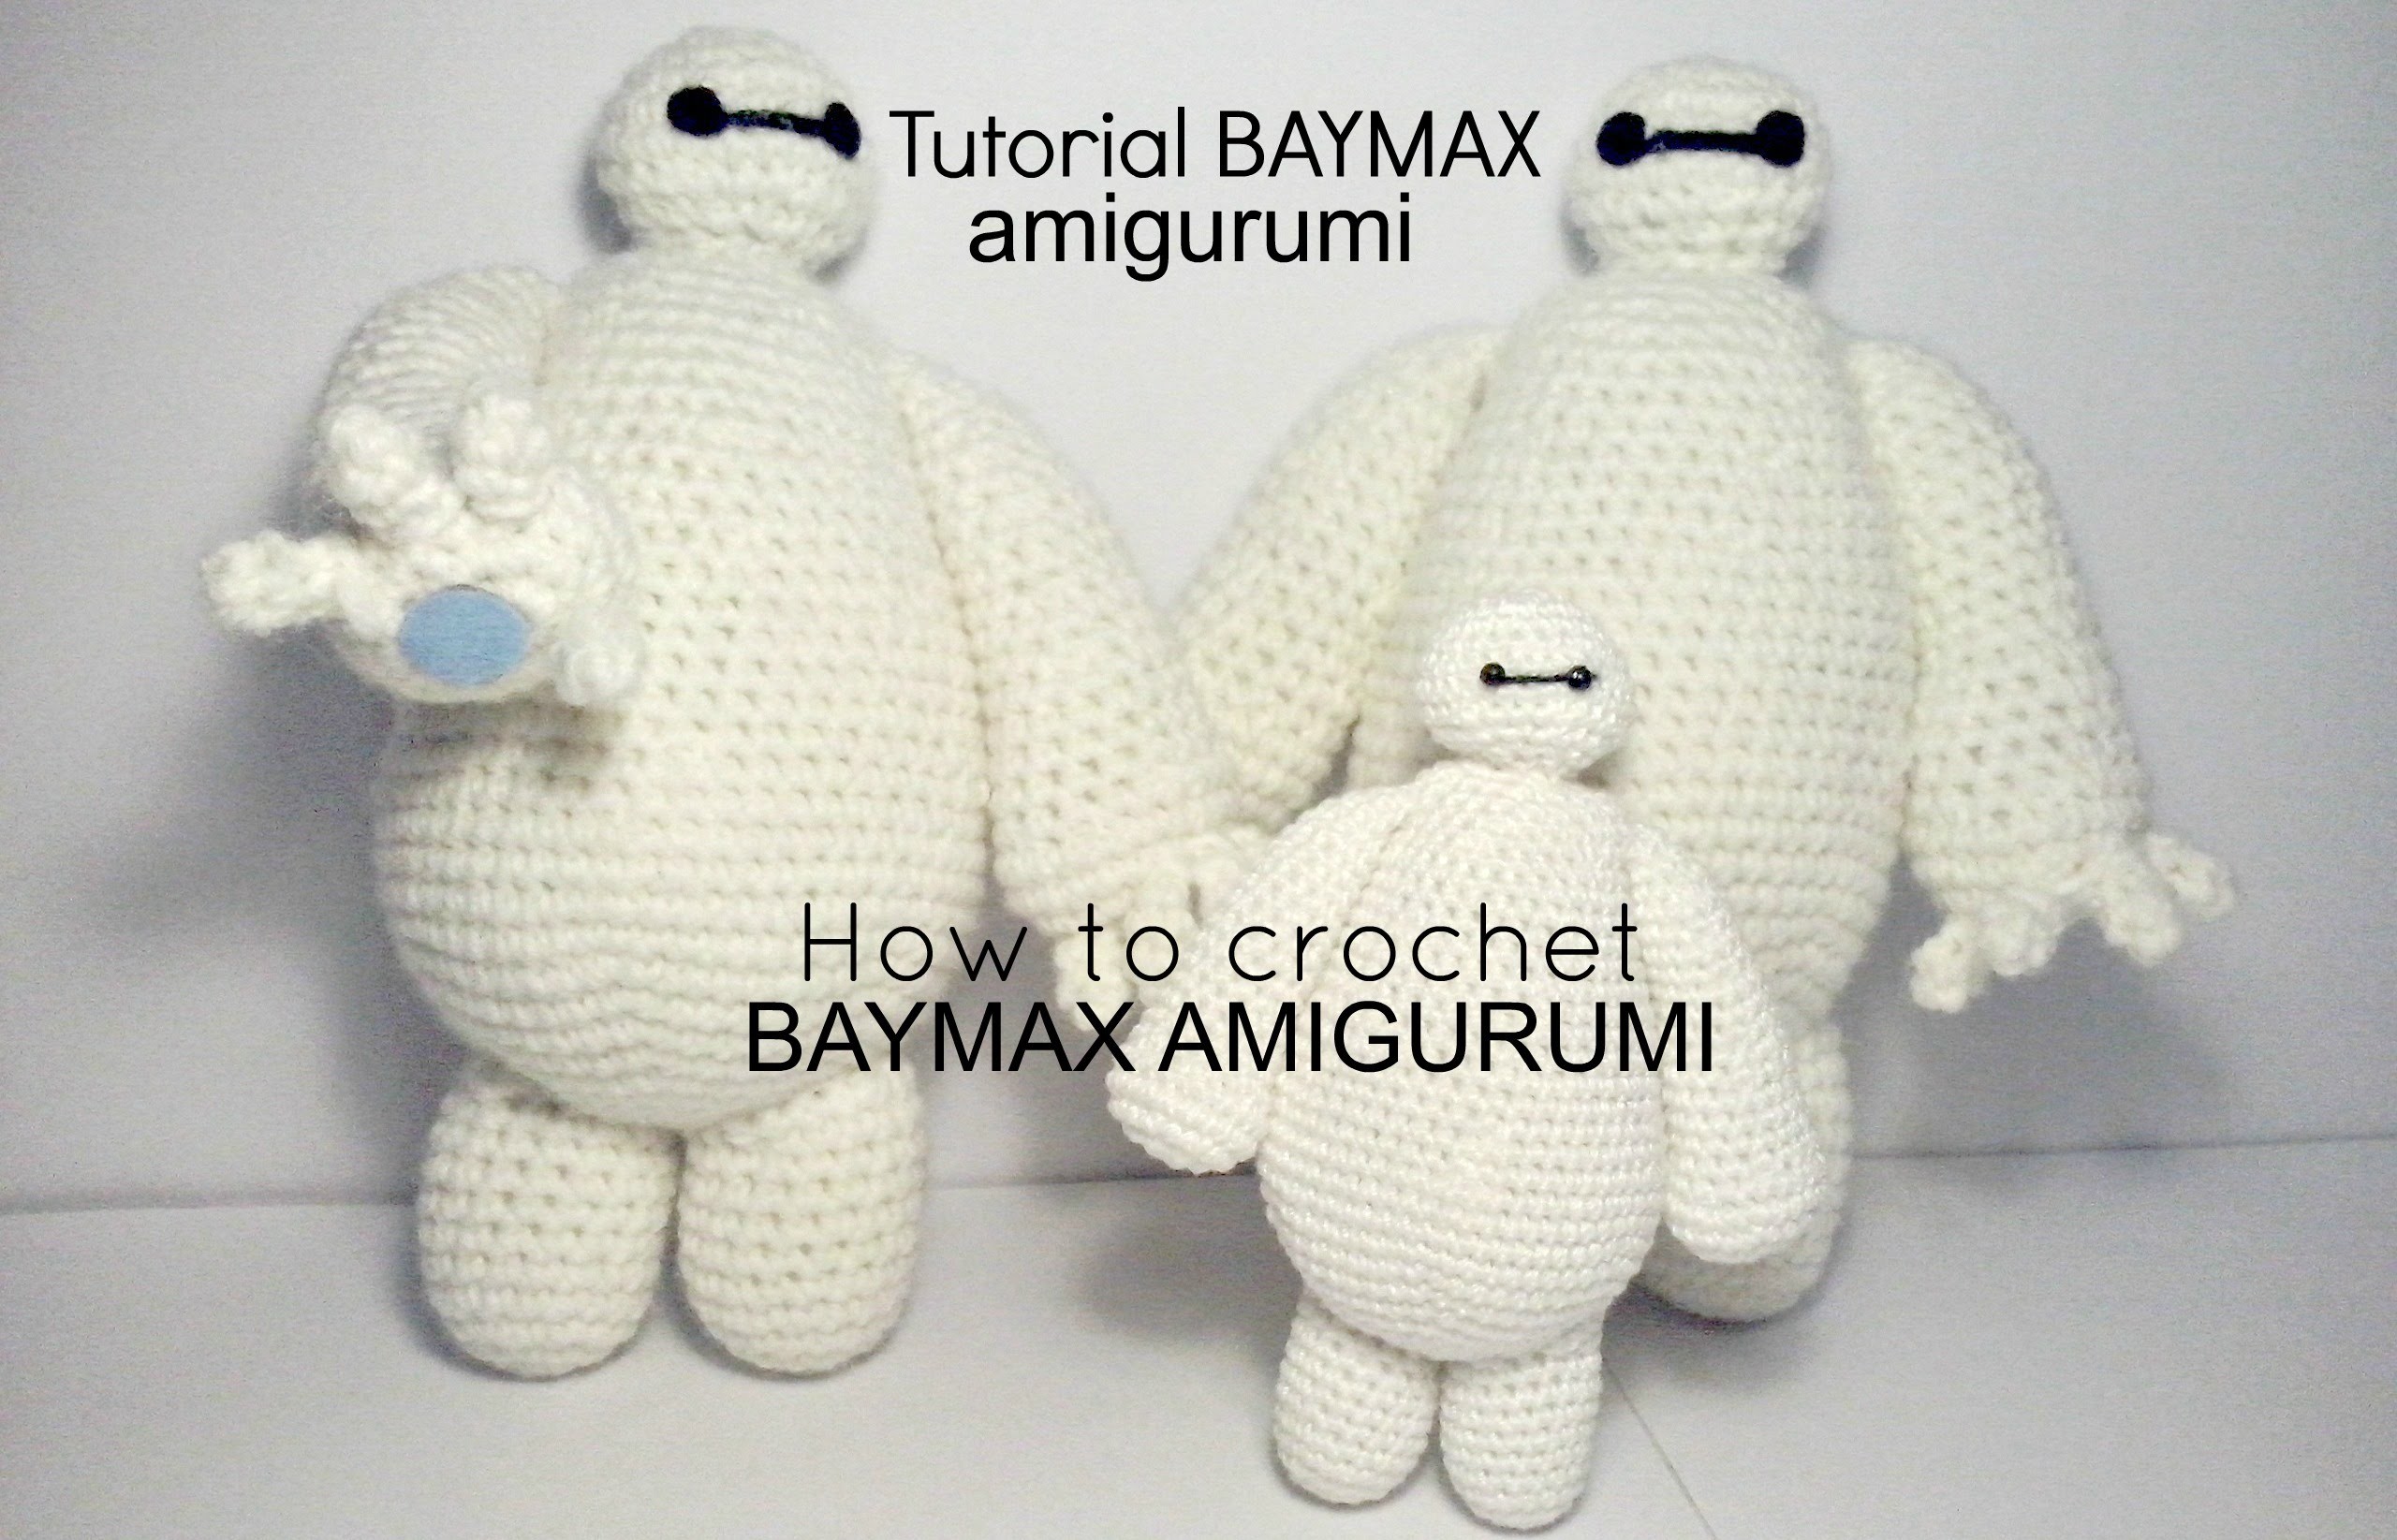 Tutorial BAYMAX big hero 6 | HOW TO CROCHET BAYMAX AMIGURUMI - PART III